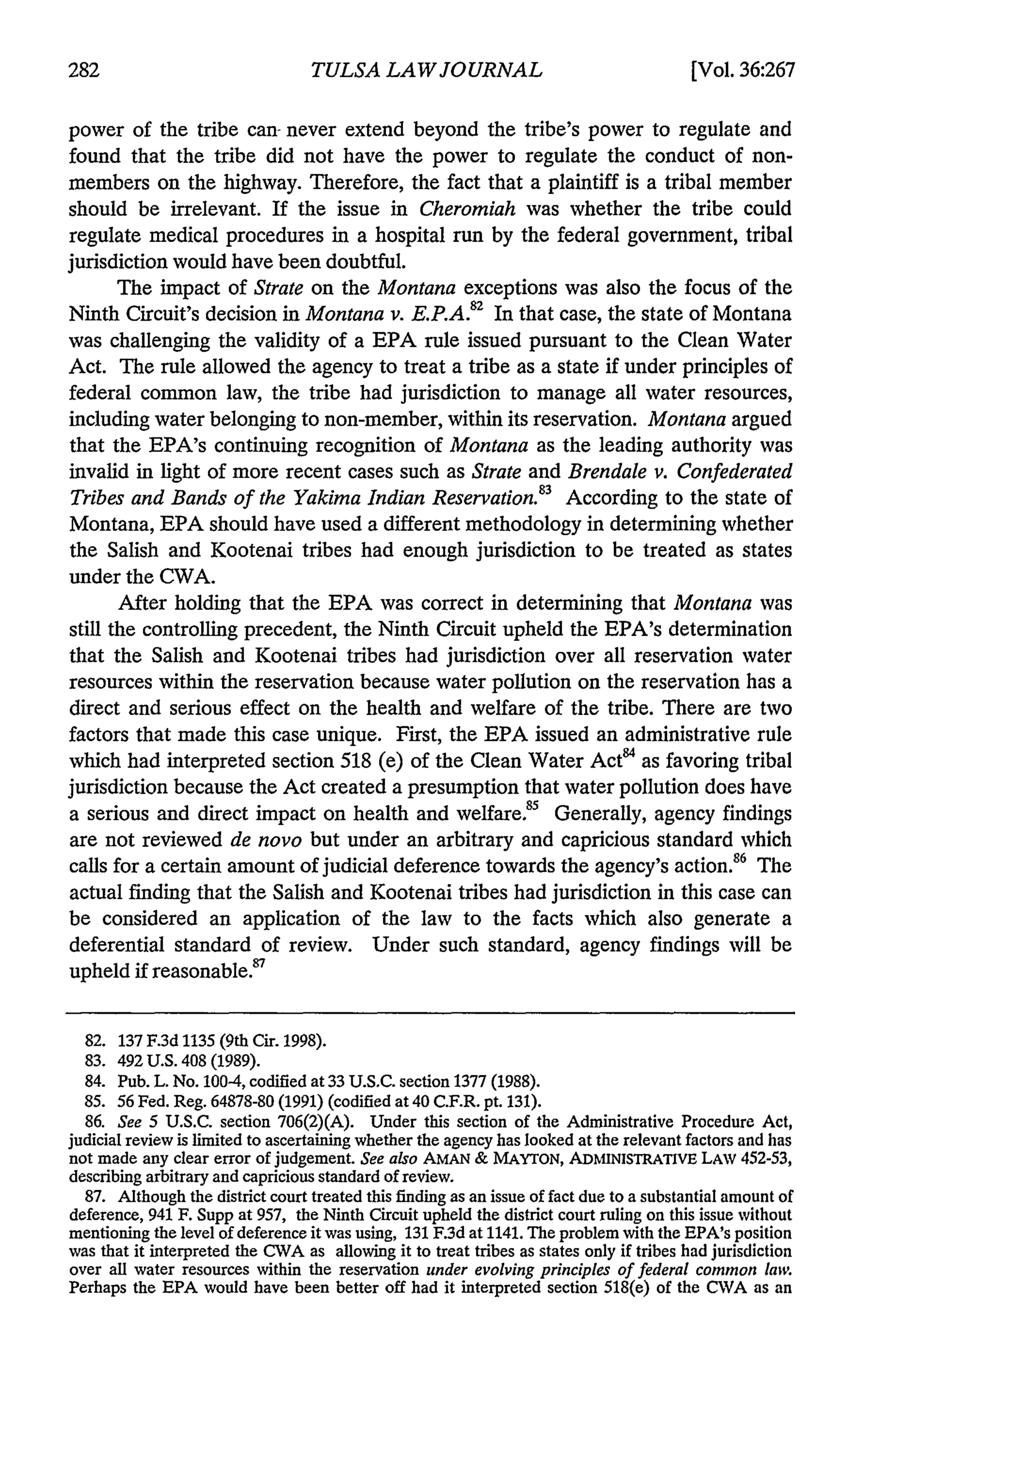 Tulsa Law Review, Vol. 36 [2000], Iss. 2, Art. 2 TULSA LAW JOURNAL [Vol.